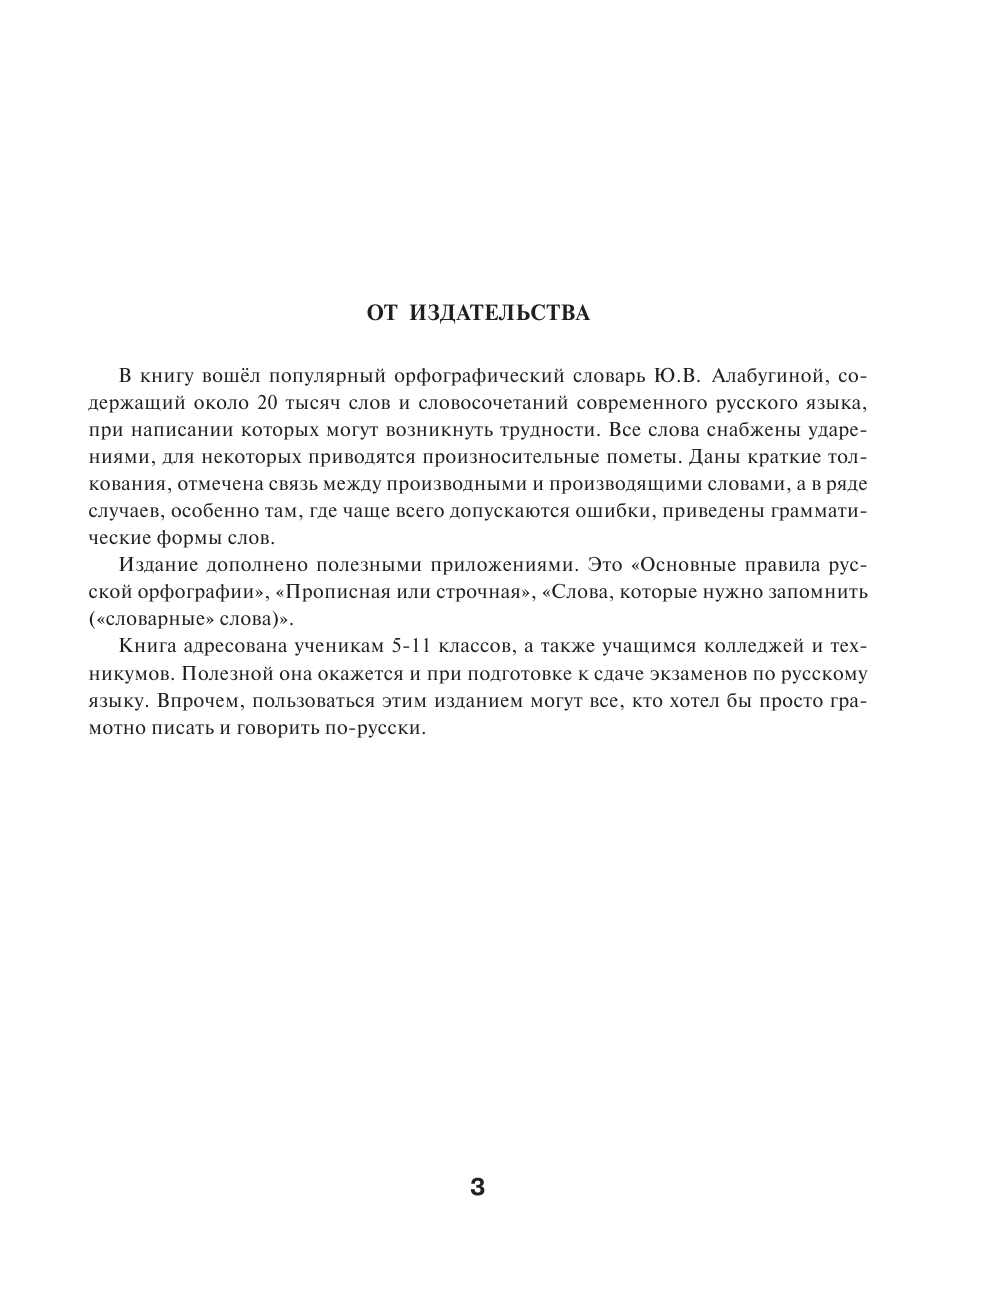  Орфографический словарь русского языка для школьников 5-11 классов - страница 2